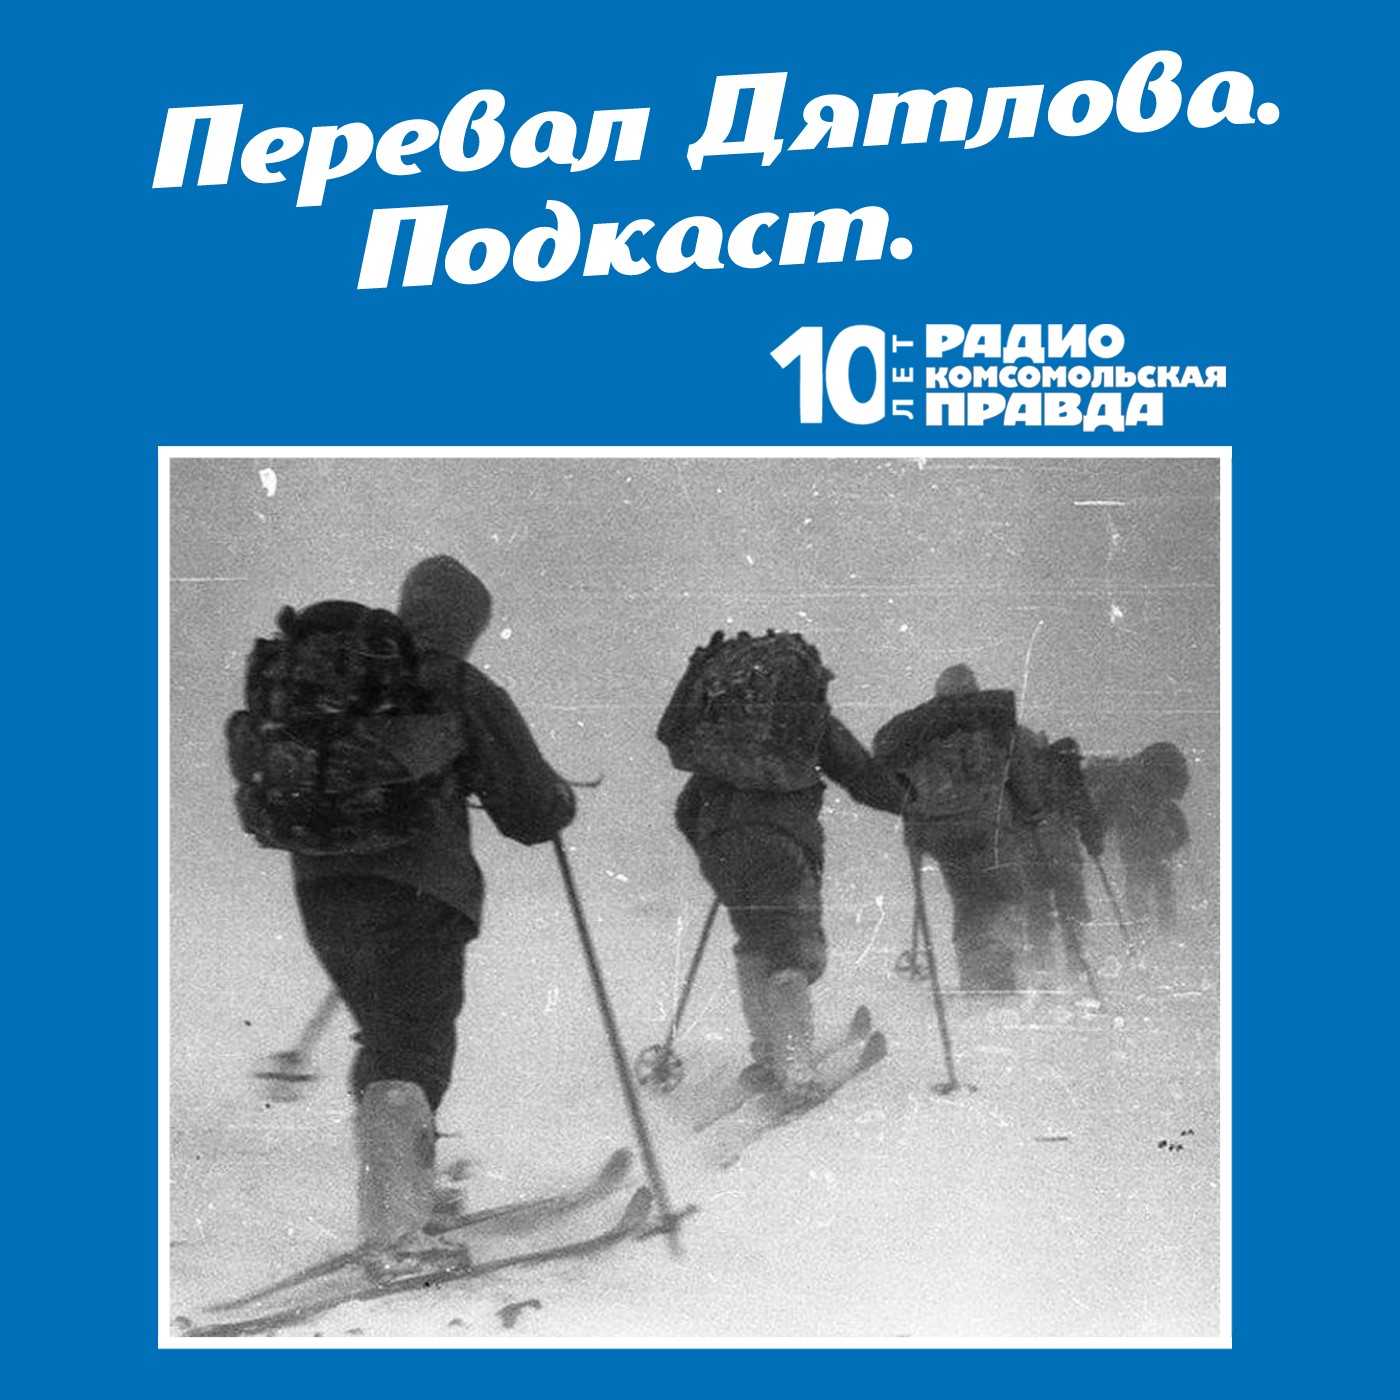 Скачать Американский «перевал Дятлова»: пятеро молодых людей пошли в горы и стали загадочно умирать один за другим - Радио «Комсомольская правда»